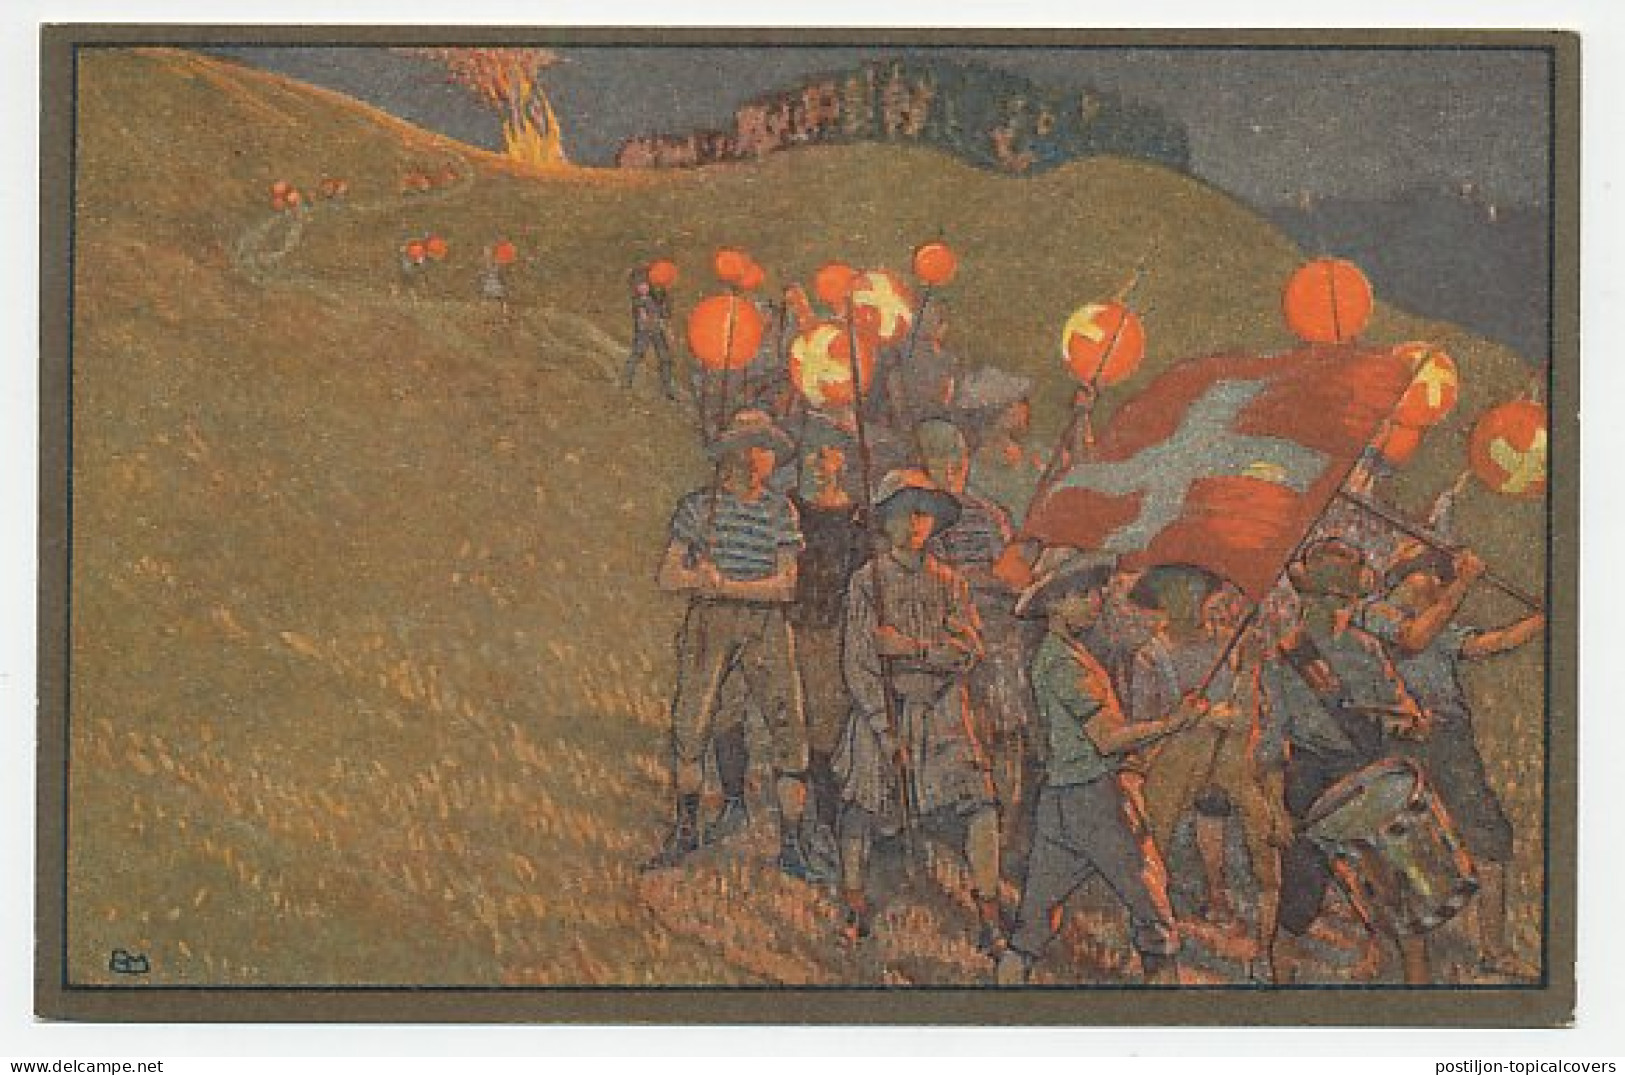 Postal Stationery Switzerland 1912 Red Cross - Drummer - Paper Lantern  - Musique